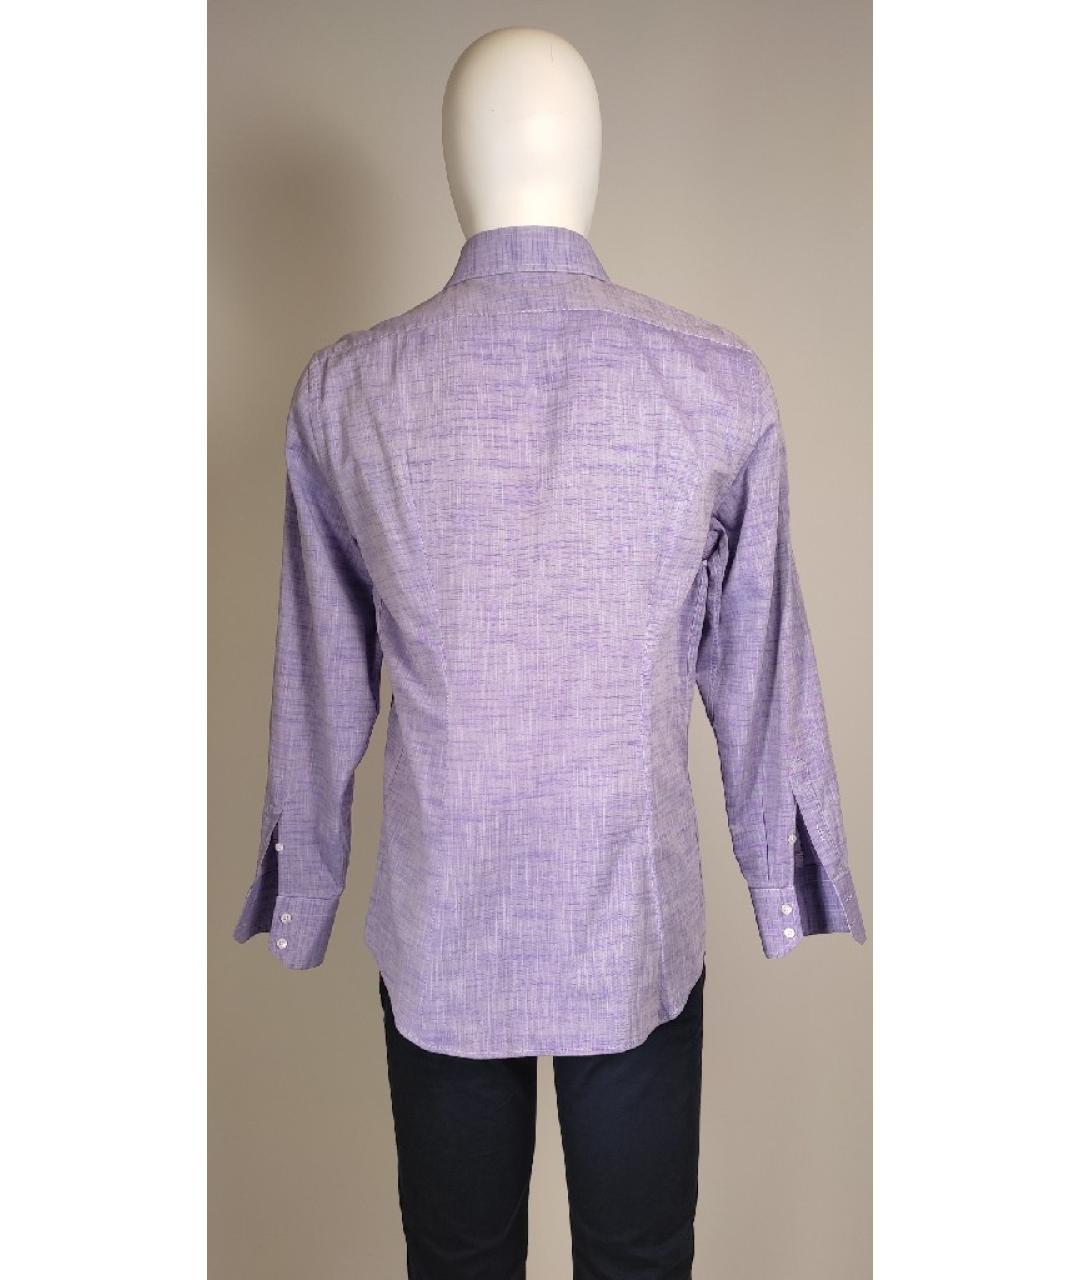 PATRICK HELLMANN Фиолетовая хлопковая классическая рубашка, фото 3